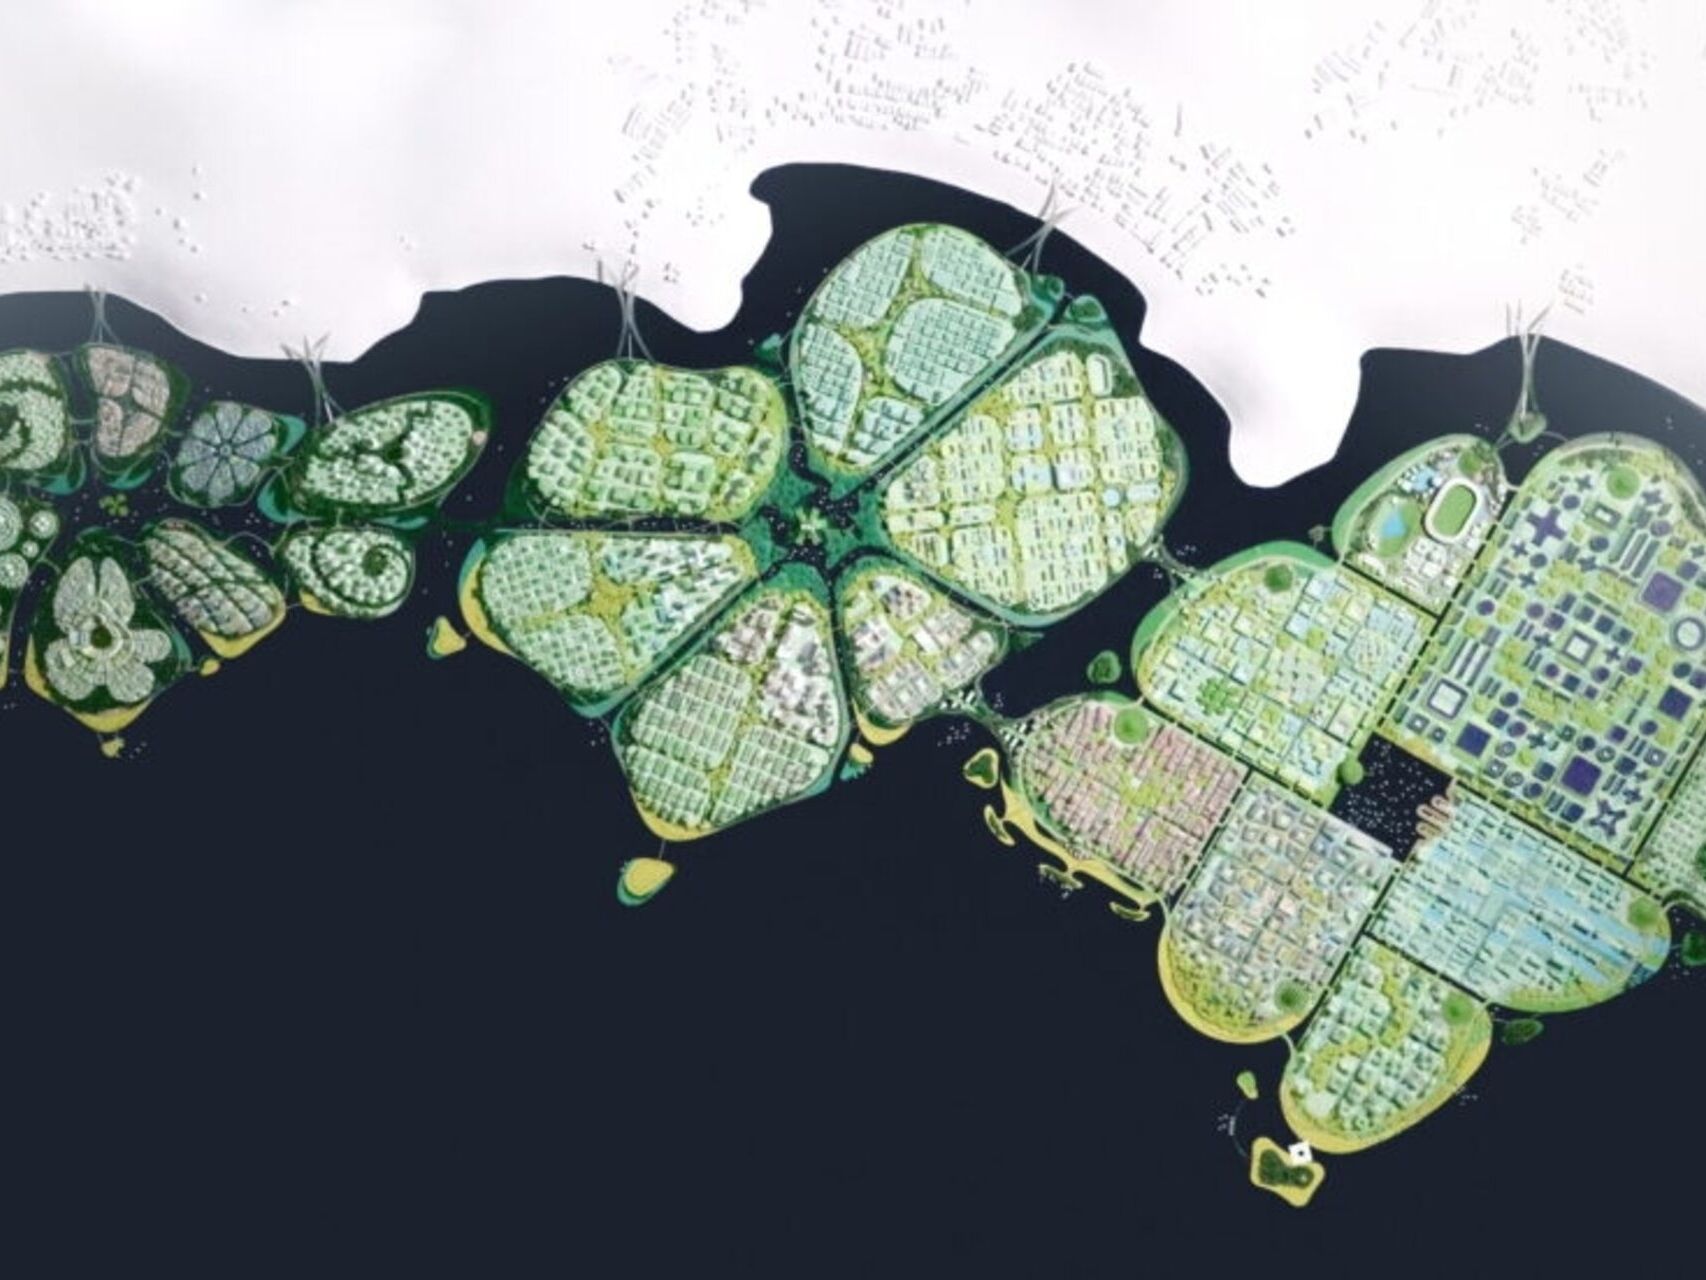 BiodiverCity: un rendering dall’alto delle tre isole The Channels, The Mangroves e The Lagoon, che formeranno la città innovativa e sostenibile di BiodiverCity nel 2030 in Malesia vicino Penang